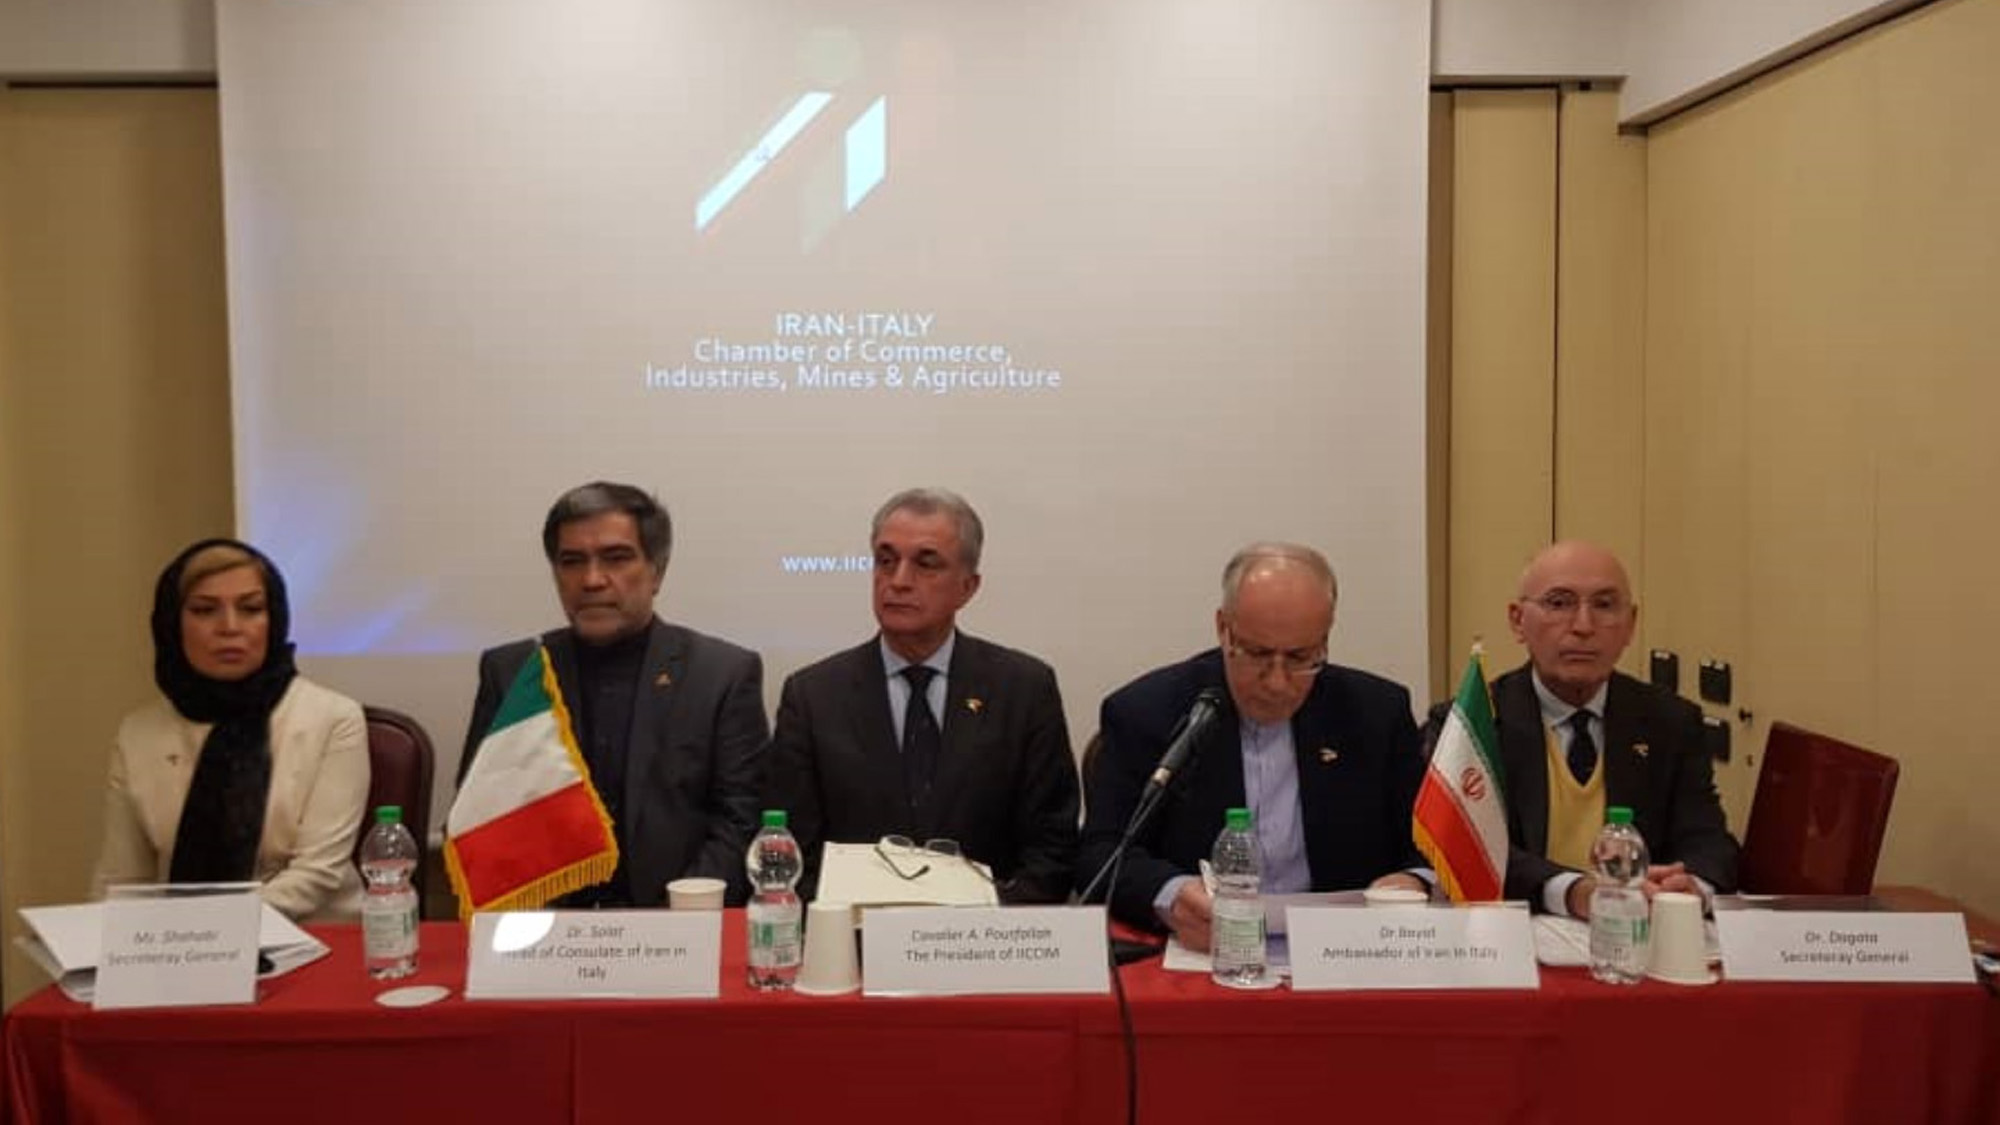 La Presenza della delegazione economica della camera di commercio Irano- Italiana a Milano